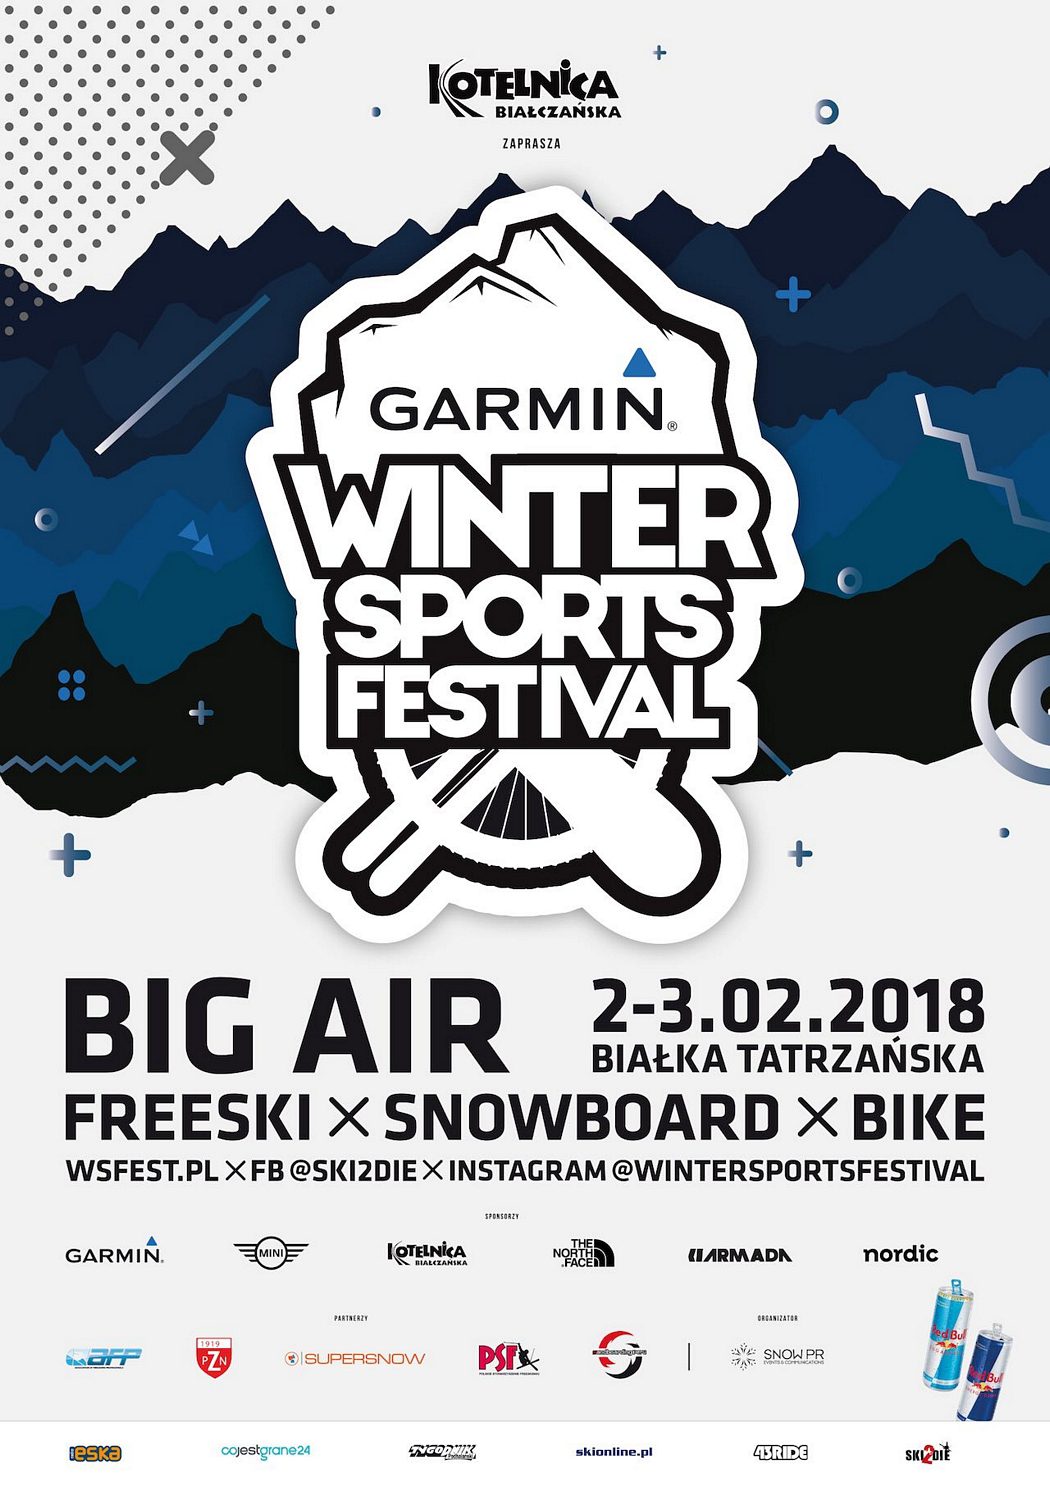 Garmin Winter Sports Festival - zapowiedź imprezy